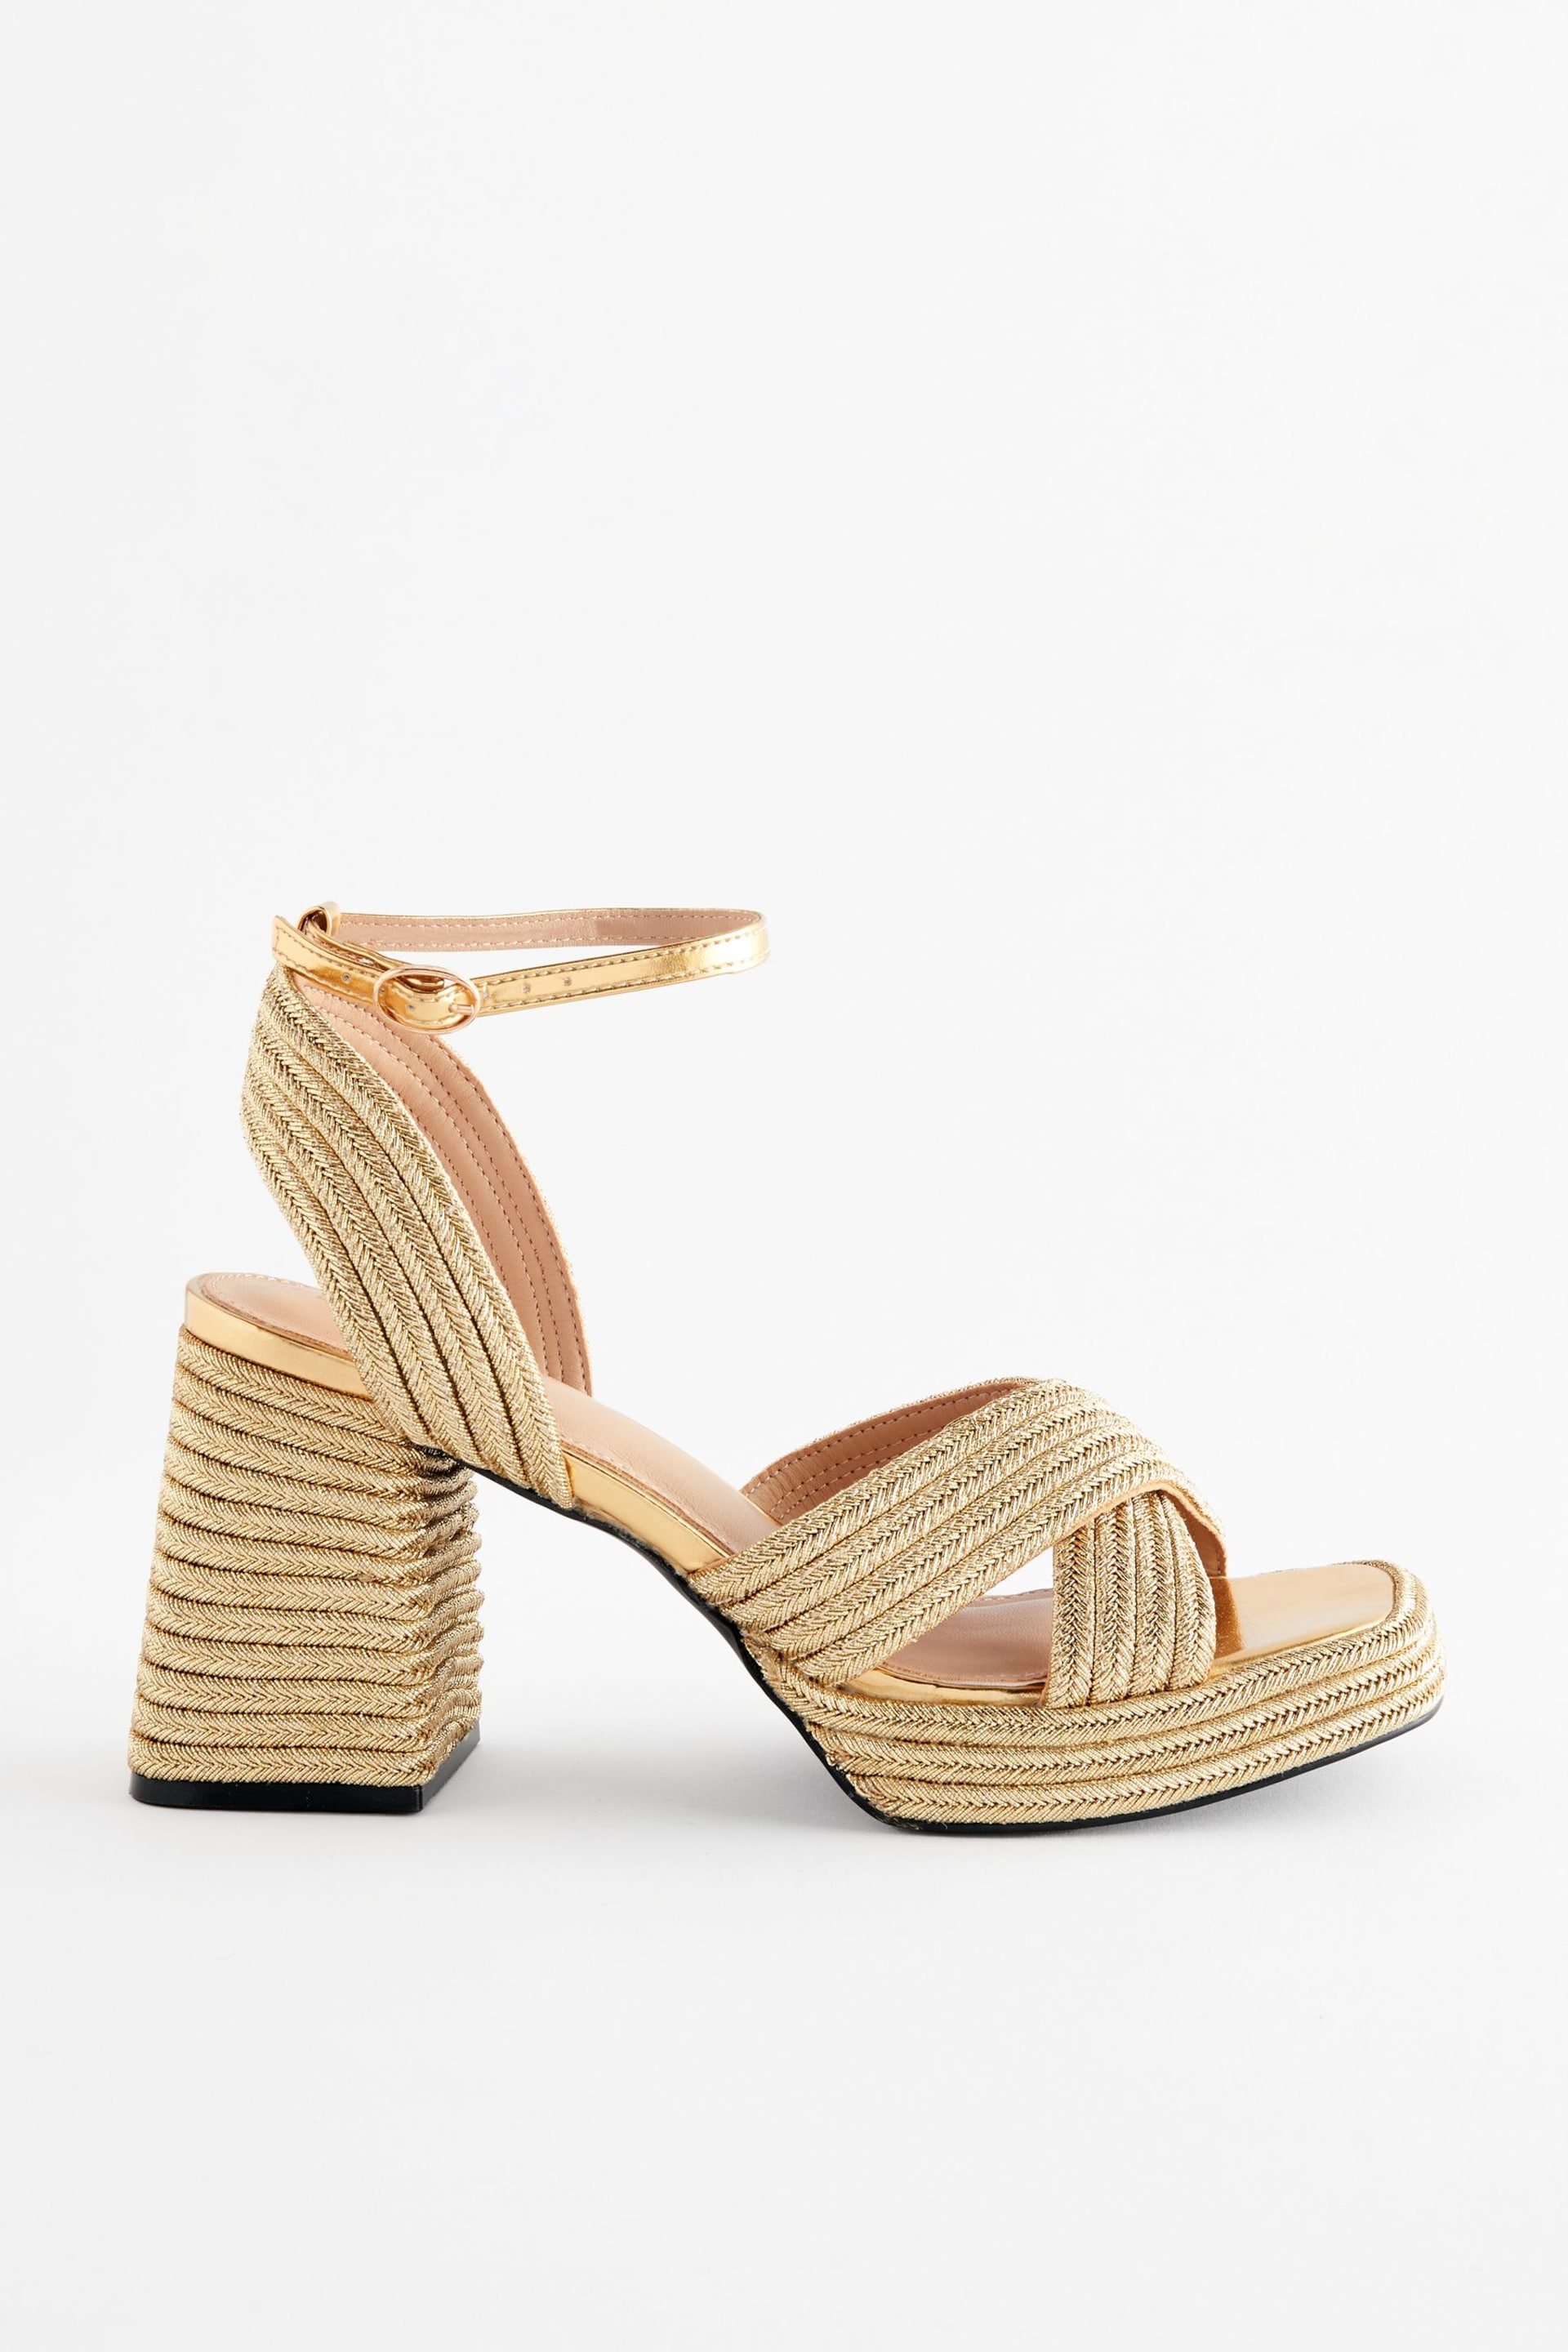 Gold Forever Comfort® Flare Platform Sandals - Image 4 of 7